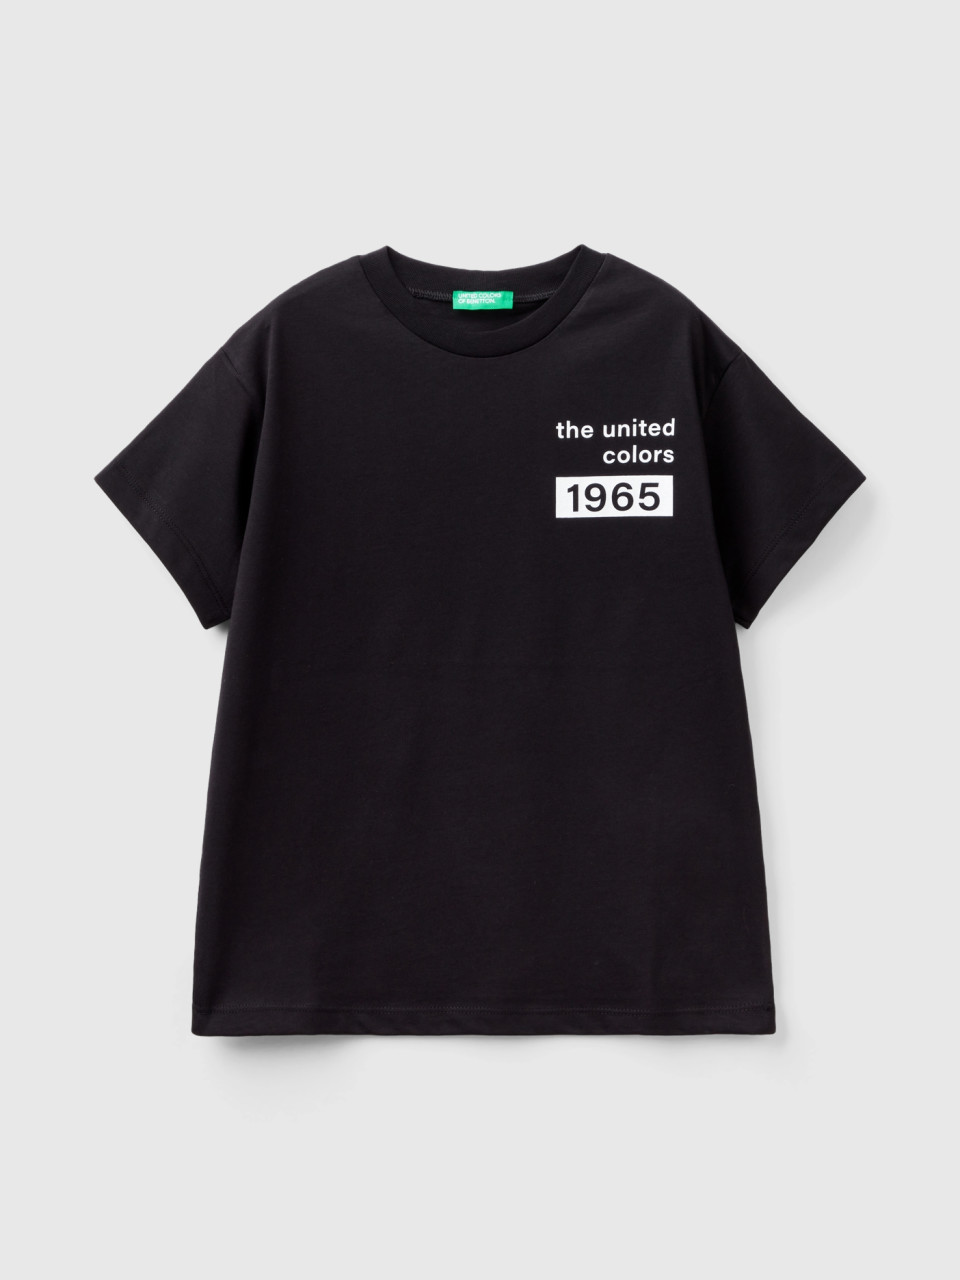 Benetton, T-shirt 100% Cotone Con Logo, Nero, Bambini